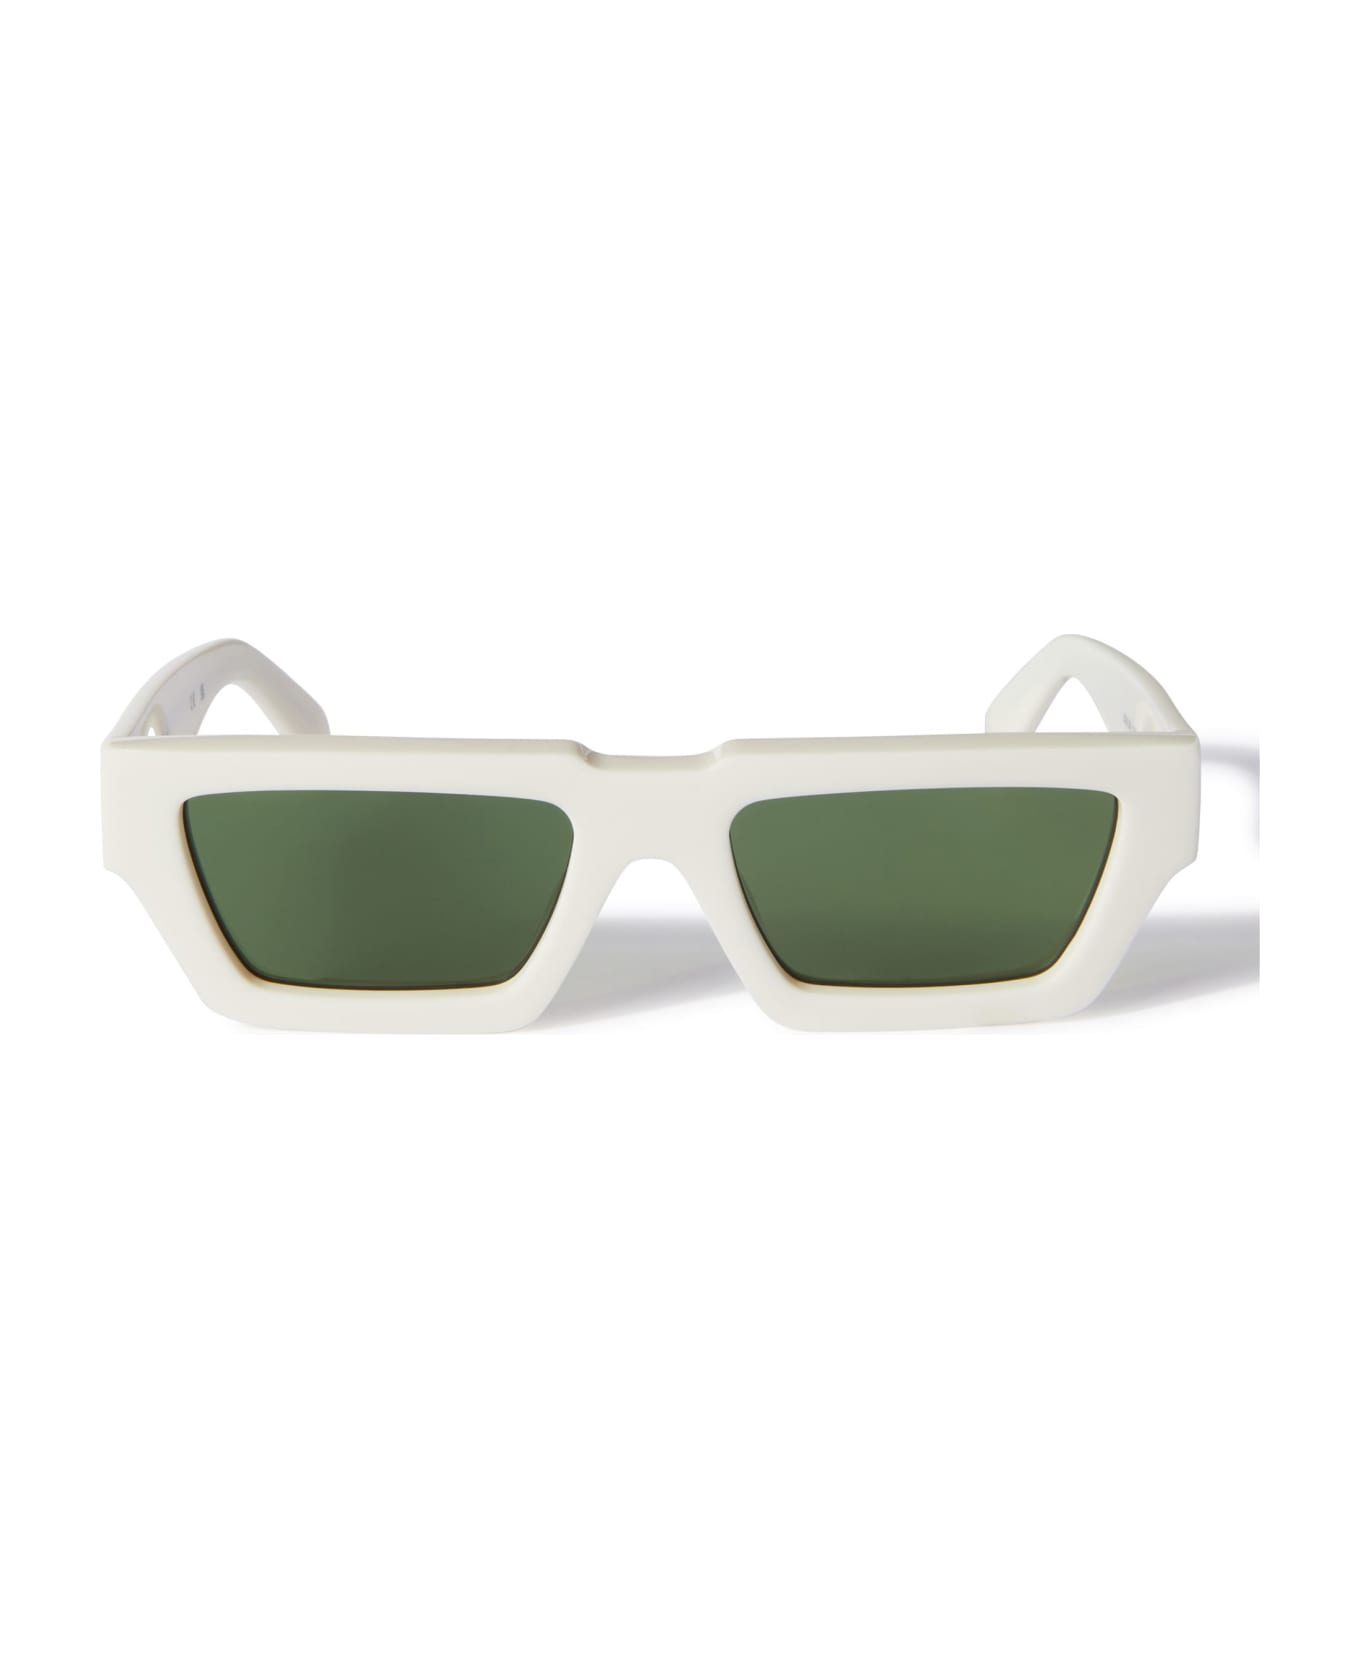 Off-White Manchester Sunglasses - White